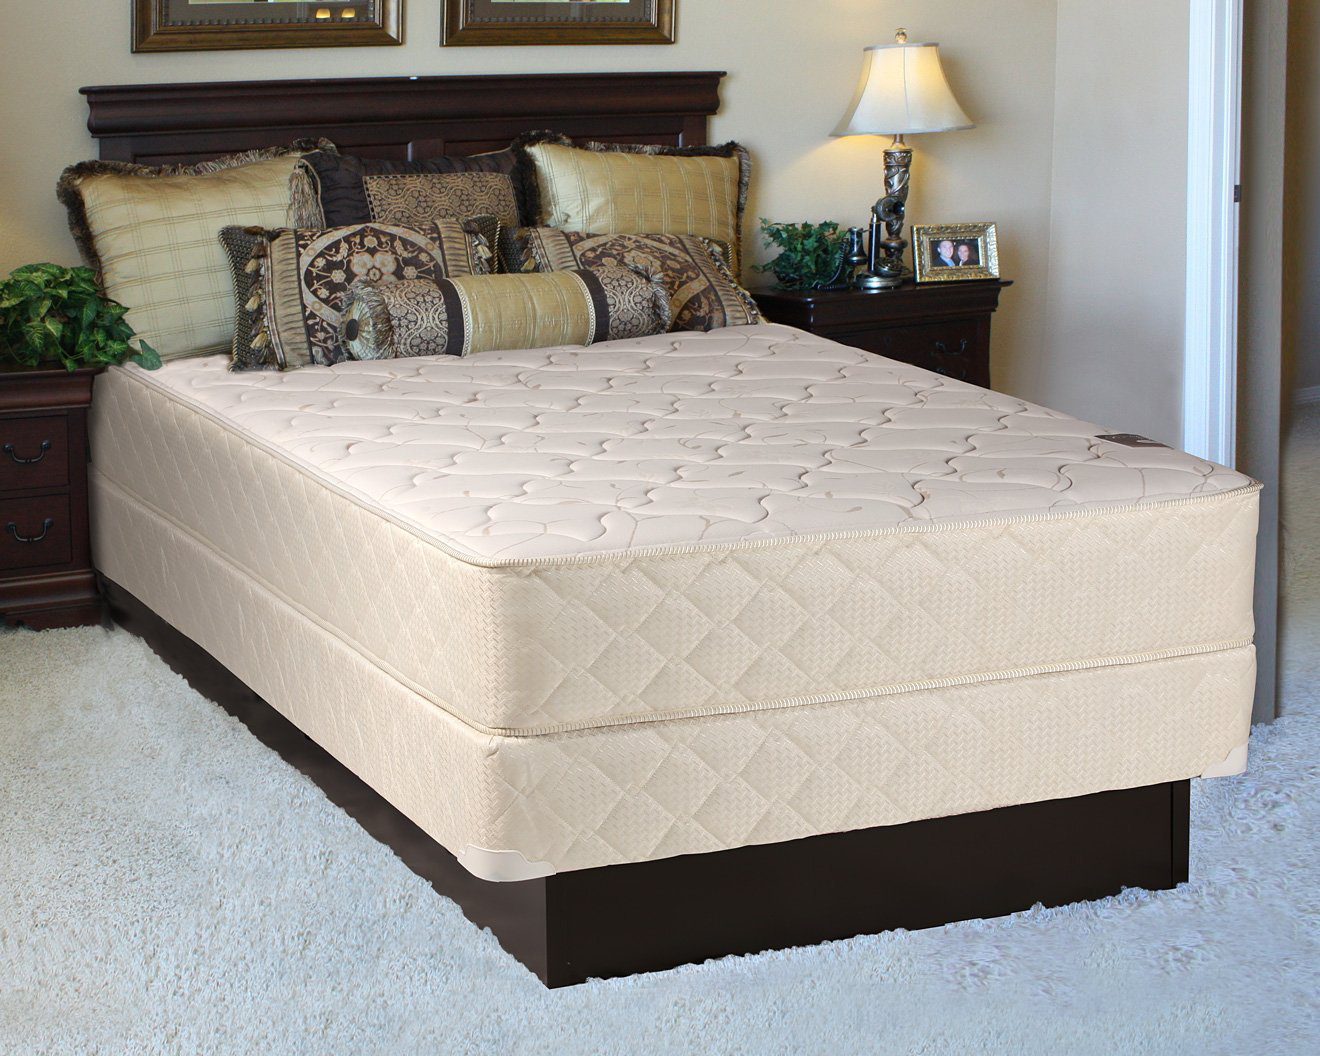 rest assured pillow top mattress